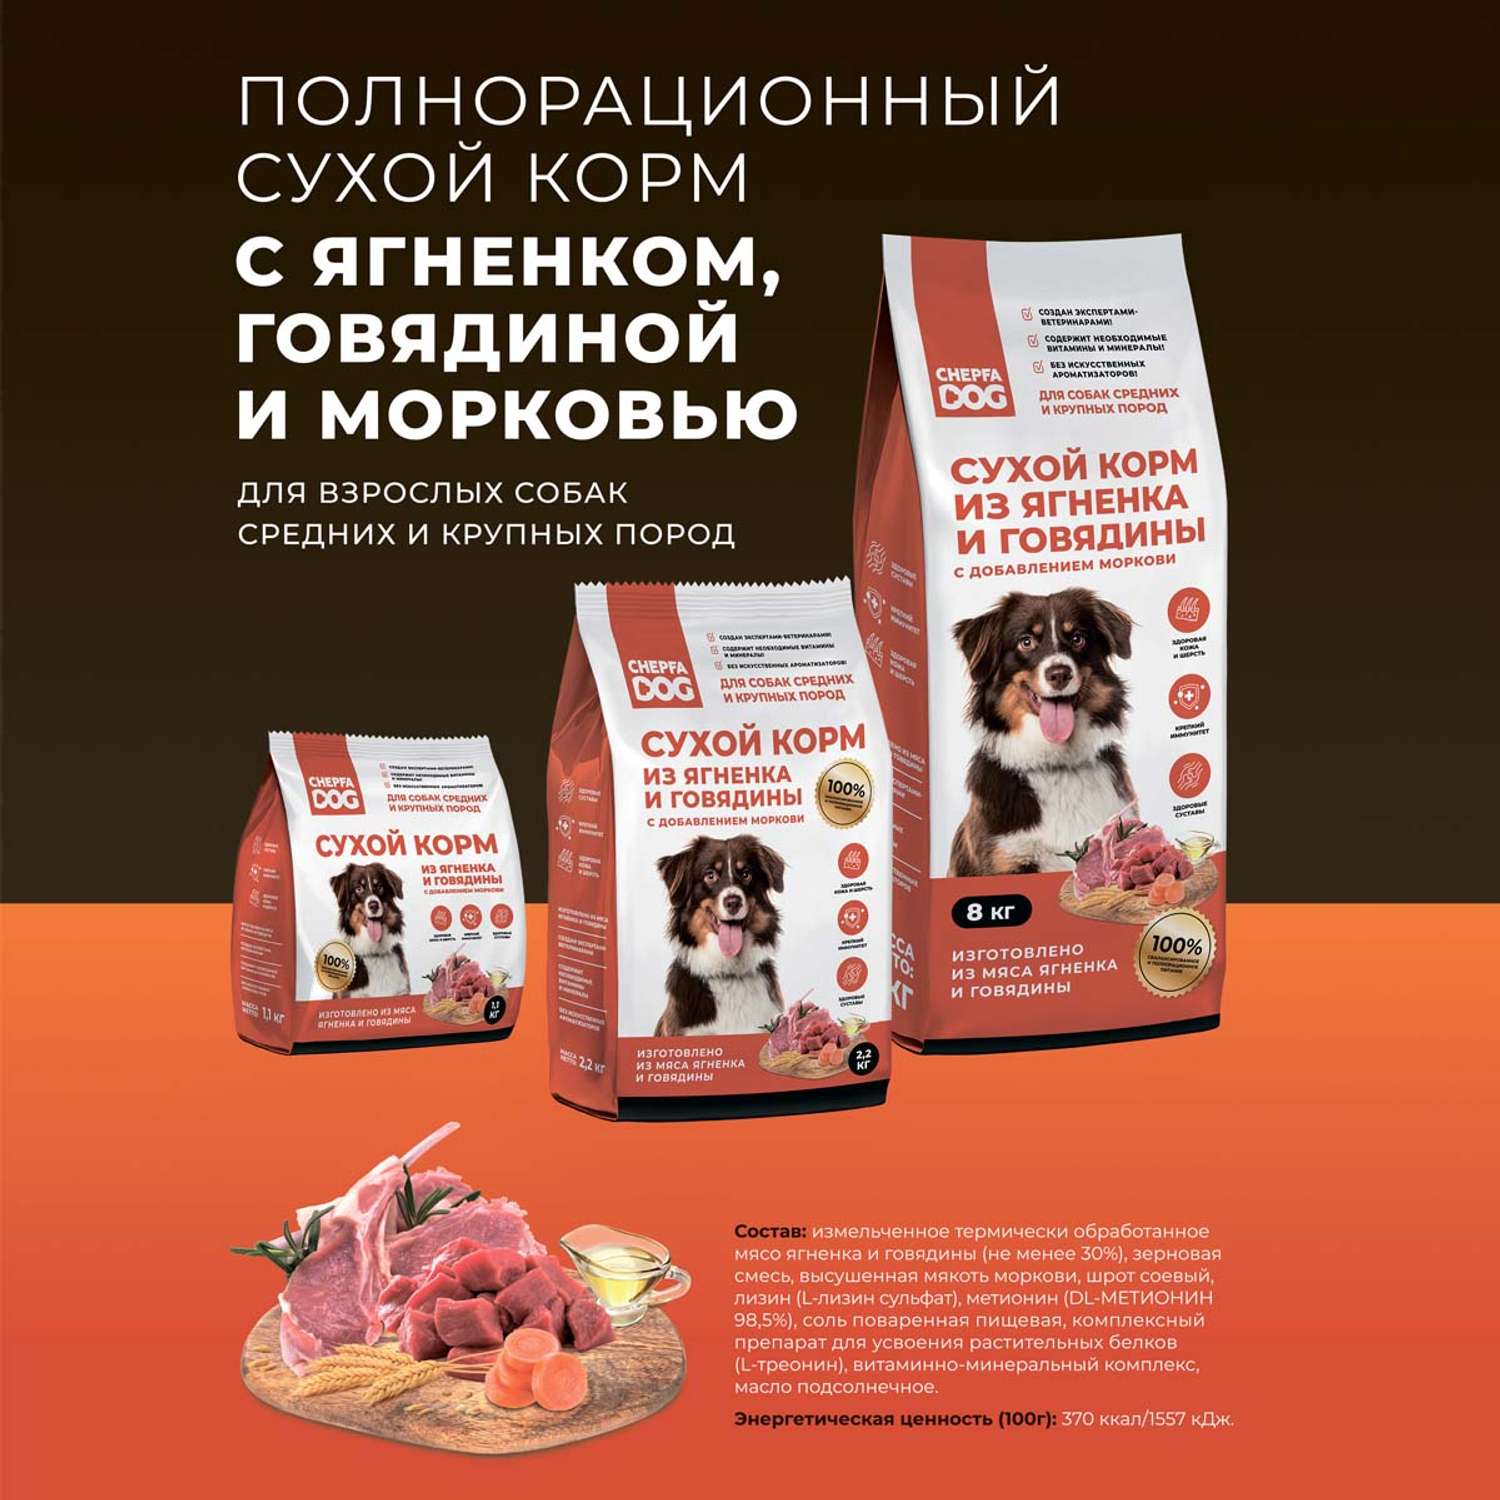 Сухой корм Chepfa Dog полнорационный ягненок и говядина 1.1 кг для взрослых собак средних и крупных пород - фото 8